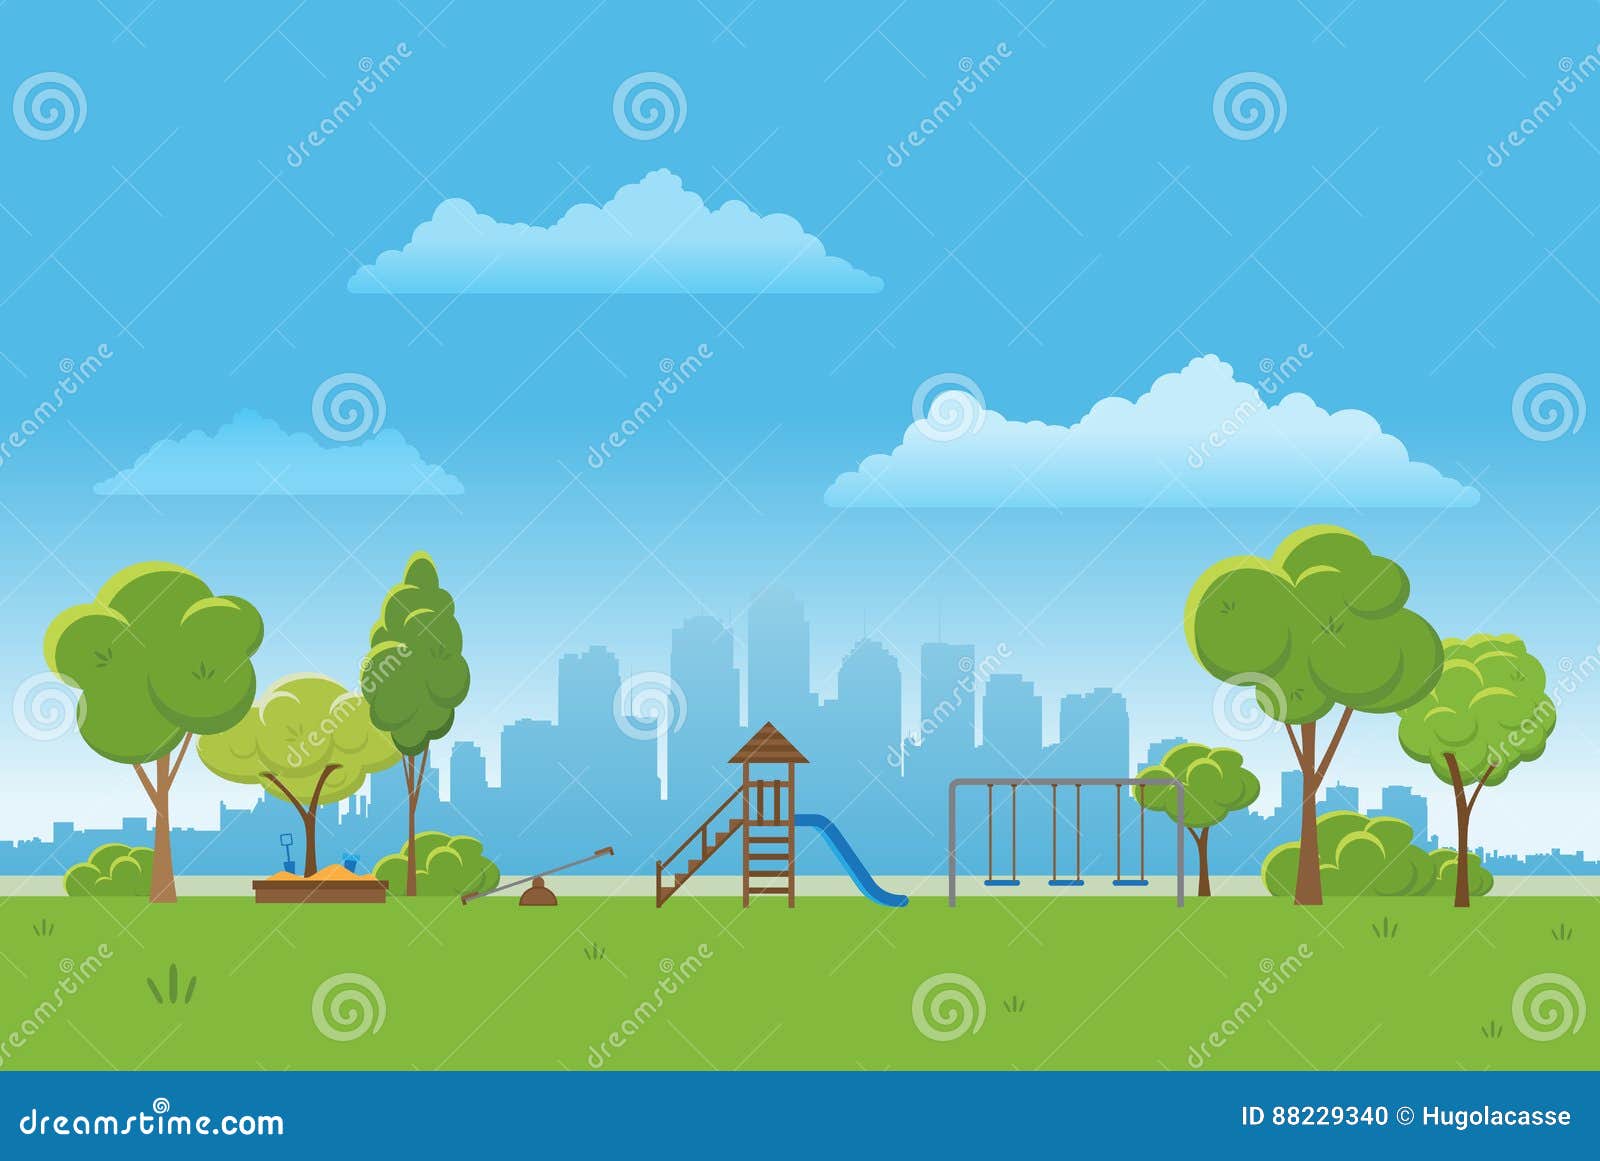 春天风景背景公园传染媒介例证城市在背景中向量例证 插画包括有 9340